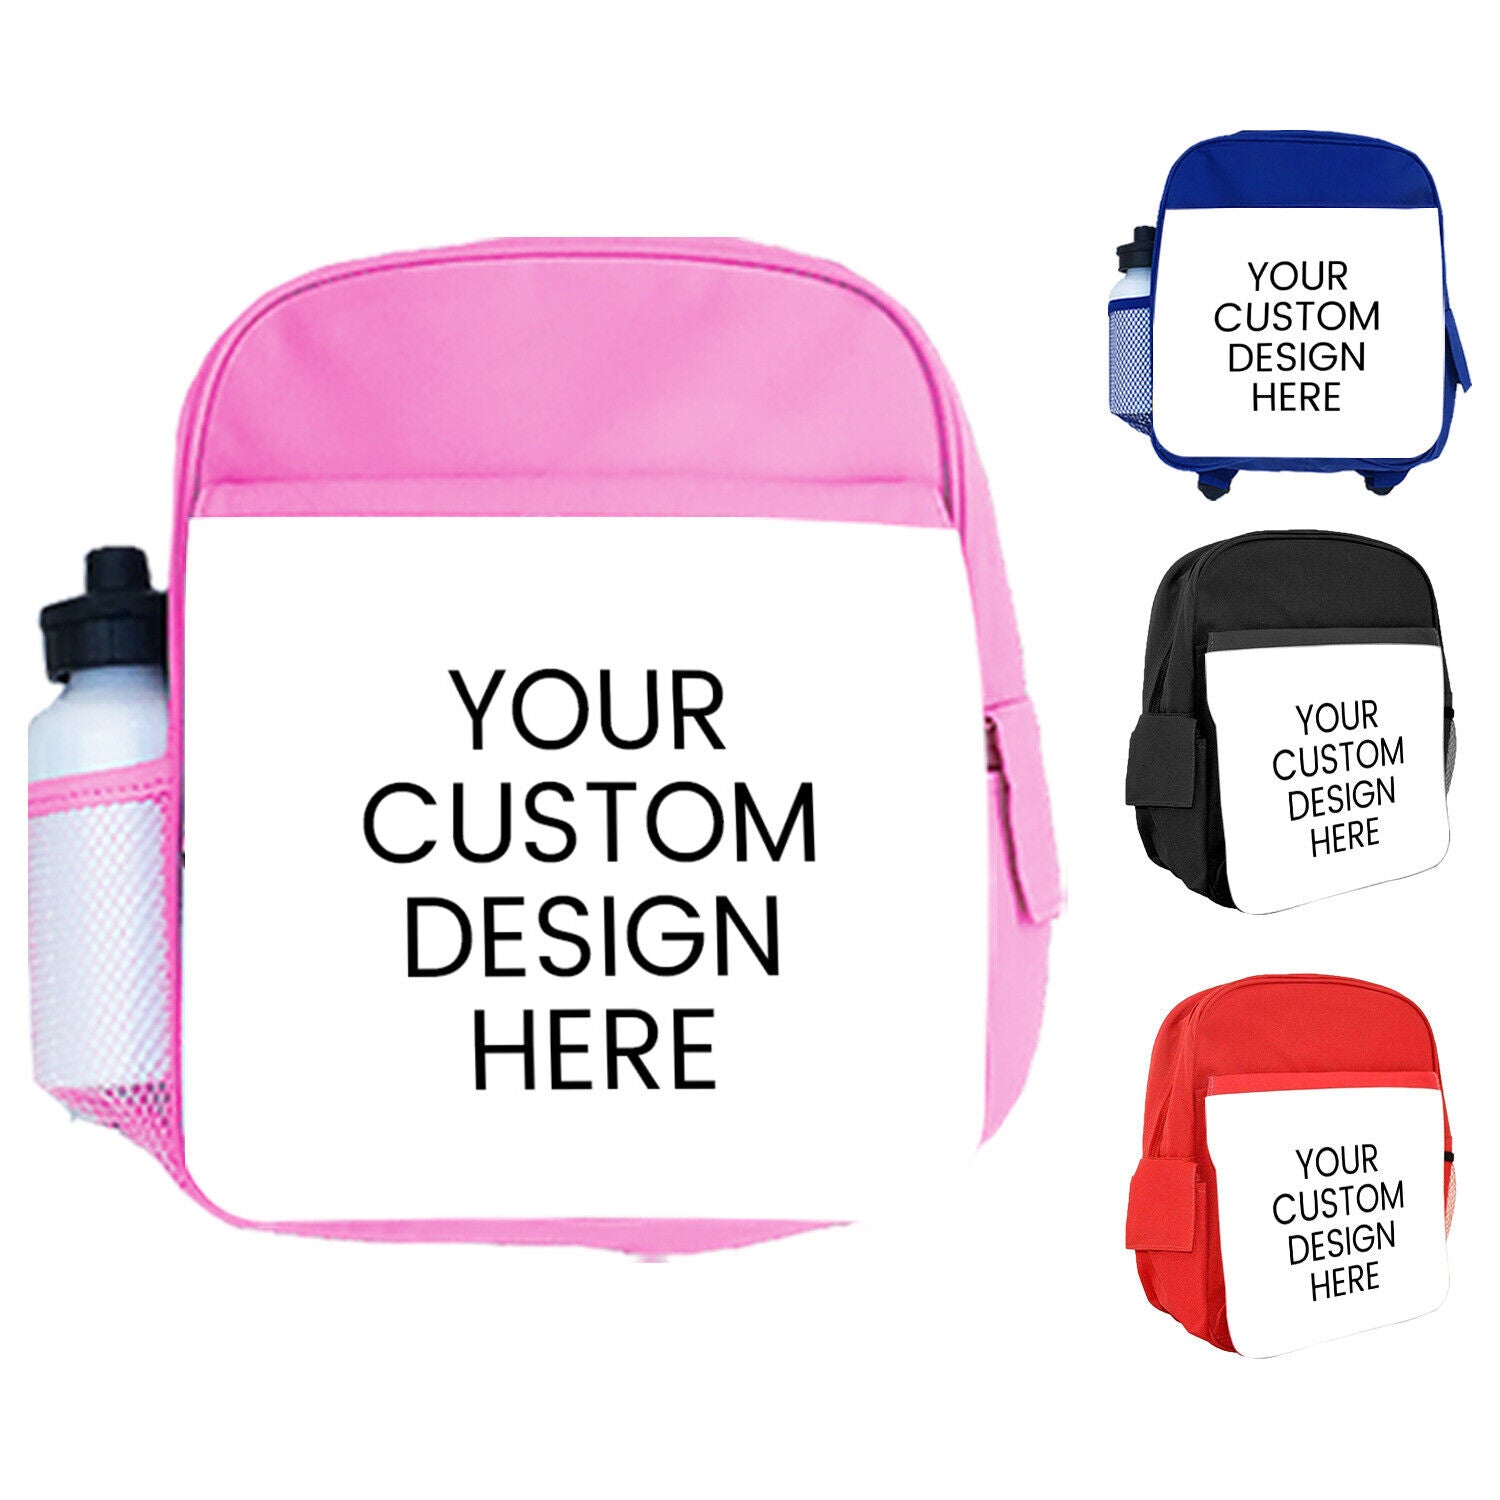 Personalised Kids Backpack Any Name Generic Design Boys Girls kid School Bag 23